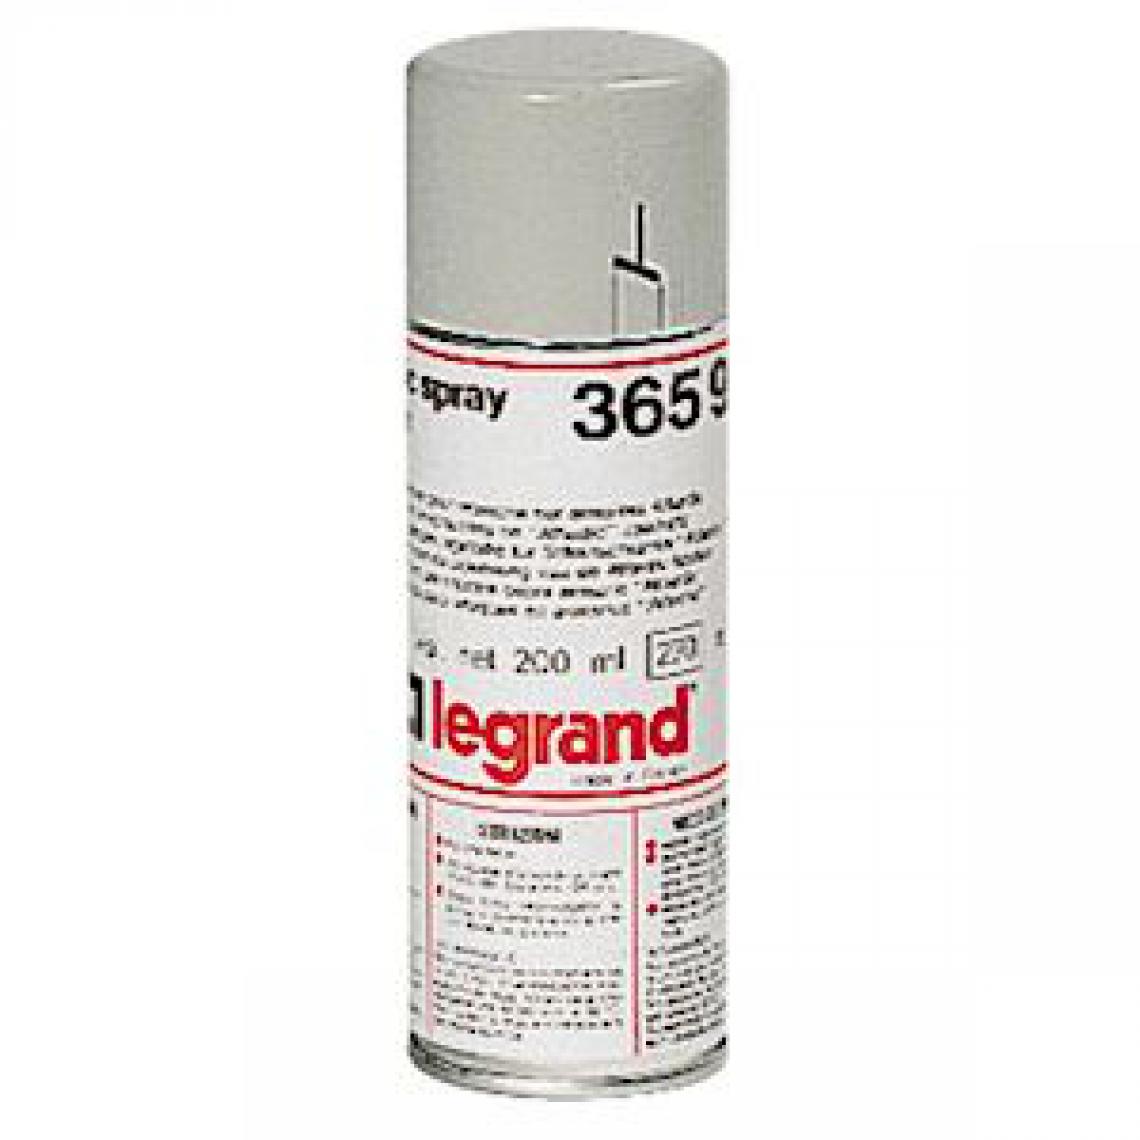 Legrand - aérosol de peinture - pour retouche - ral7035 - 150 ml - legrand 036597 - Autres équipements modulaires